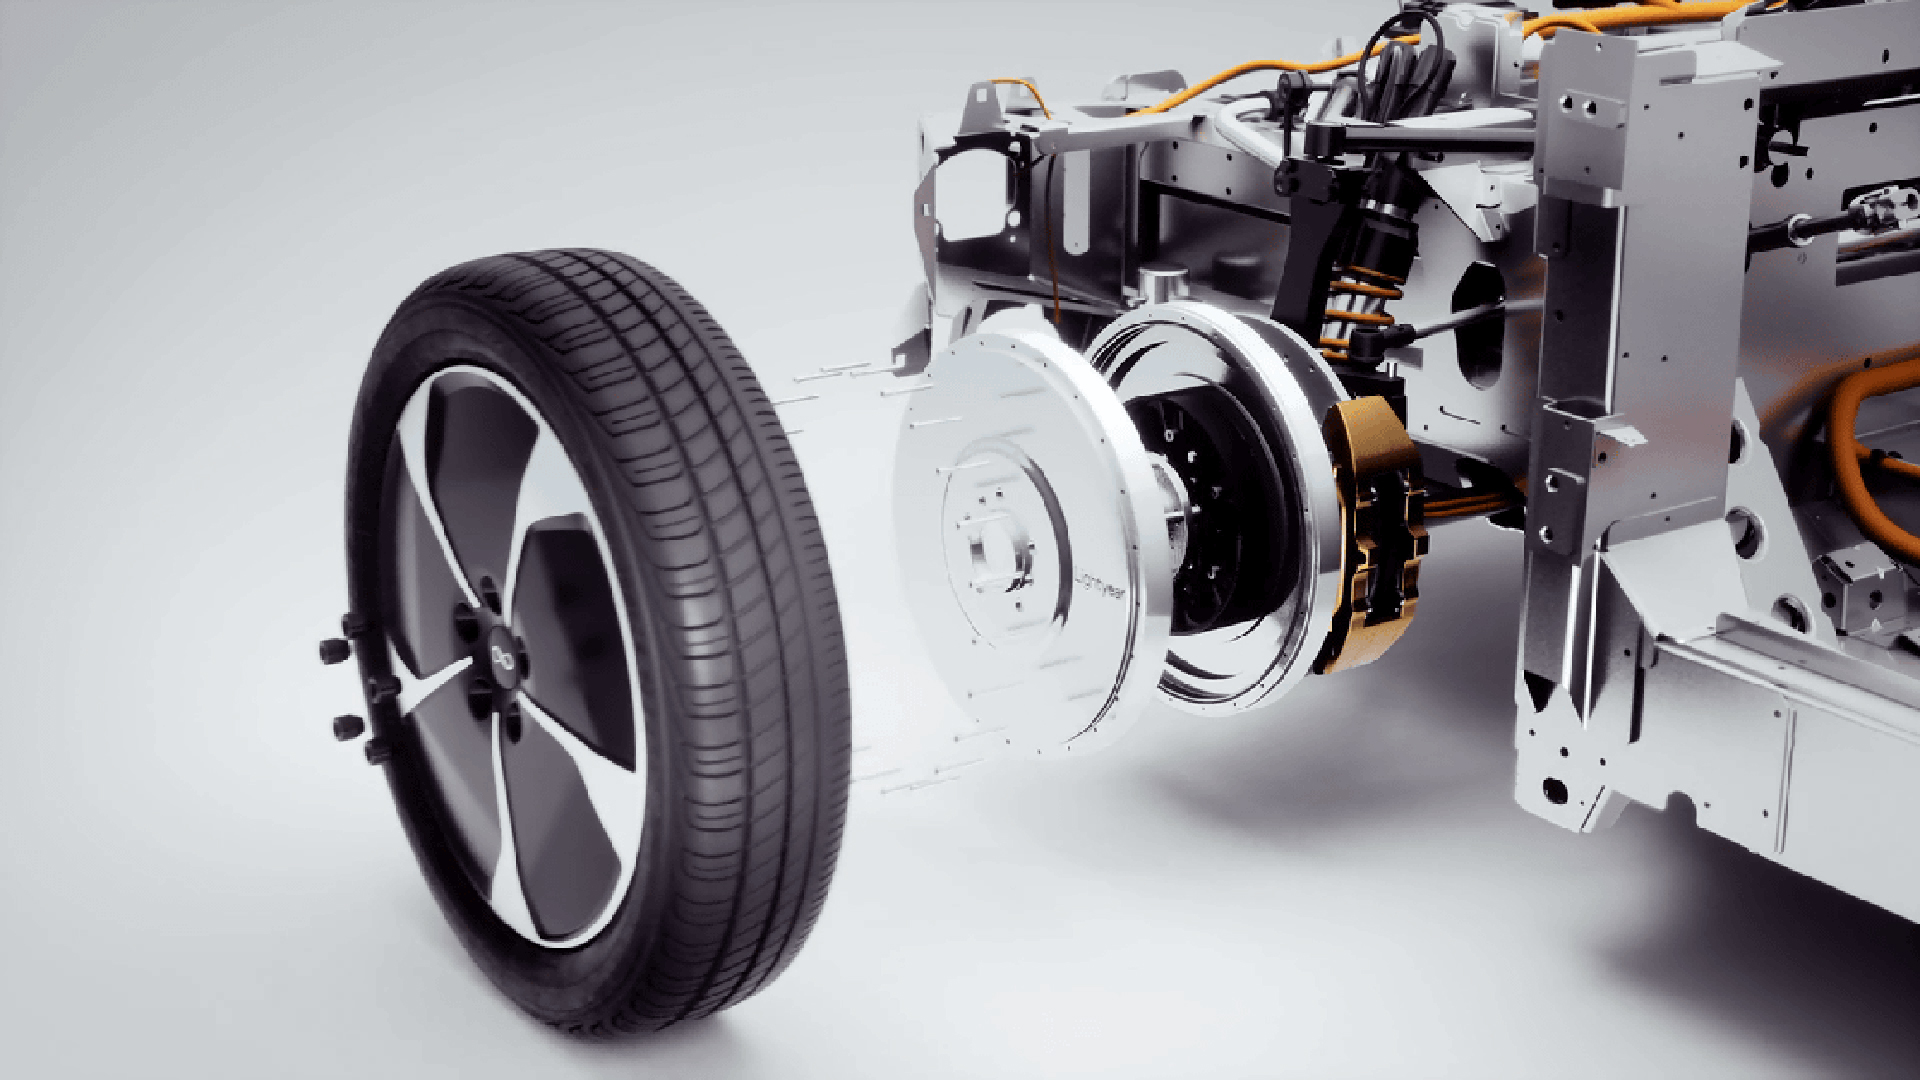 Un motor en cada rueda, simplifica la mecánica, reduce fricciones y peso, y mejora el rendimiento general del vehículo